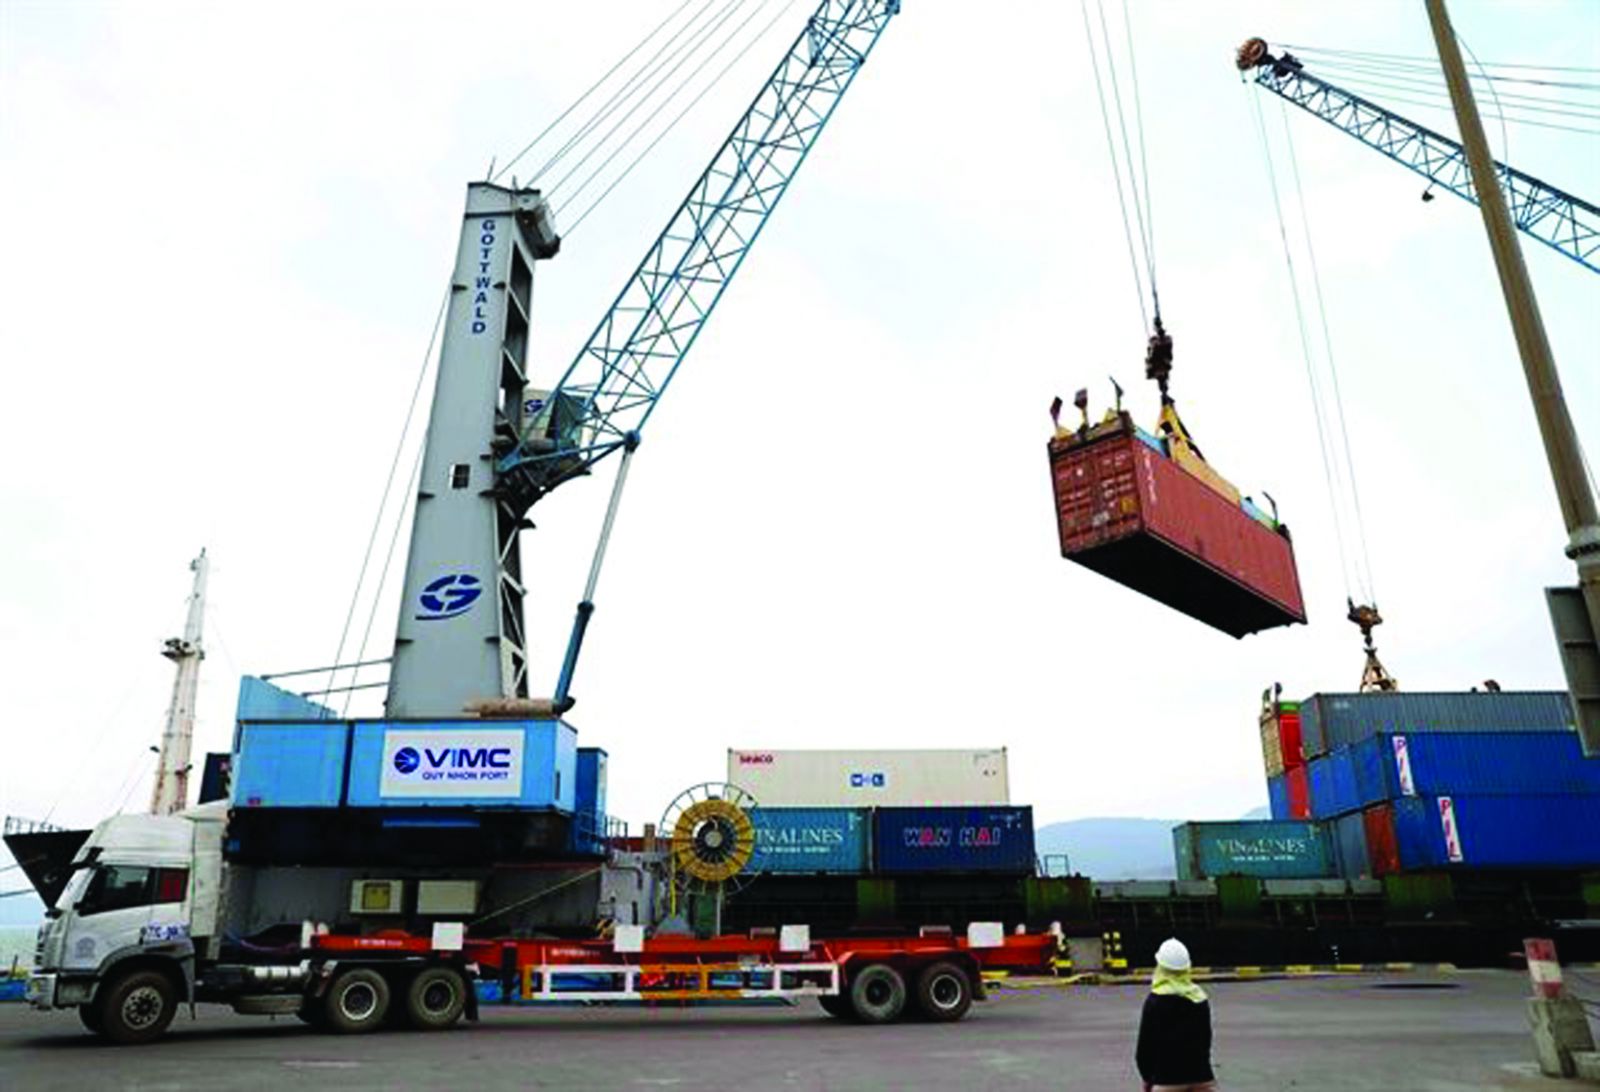  Thiếu hụt container nên khó khăn cho doanh nghiệp xuất khẩu.p/Ảnh: Lệ An